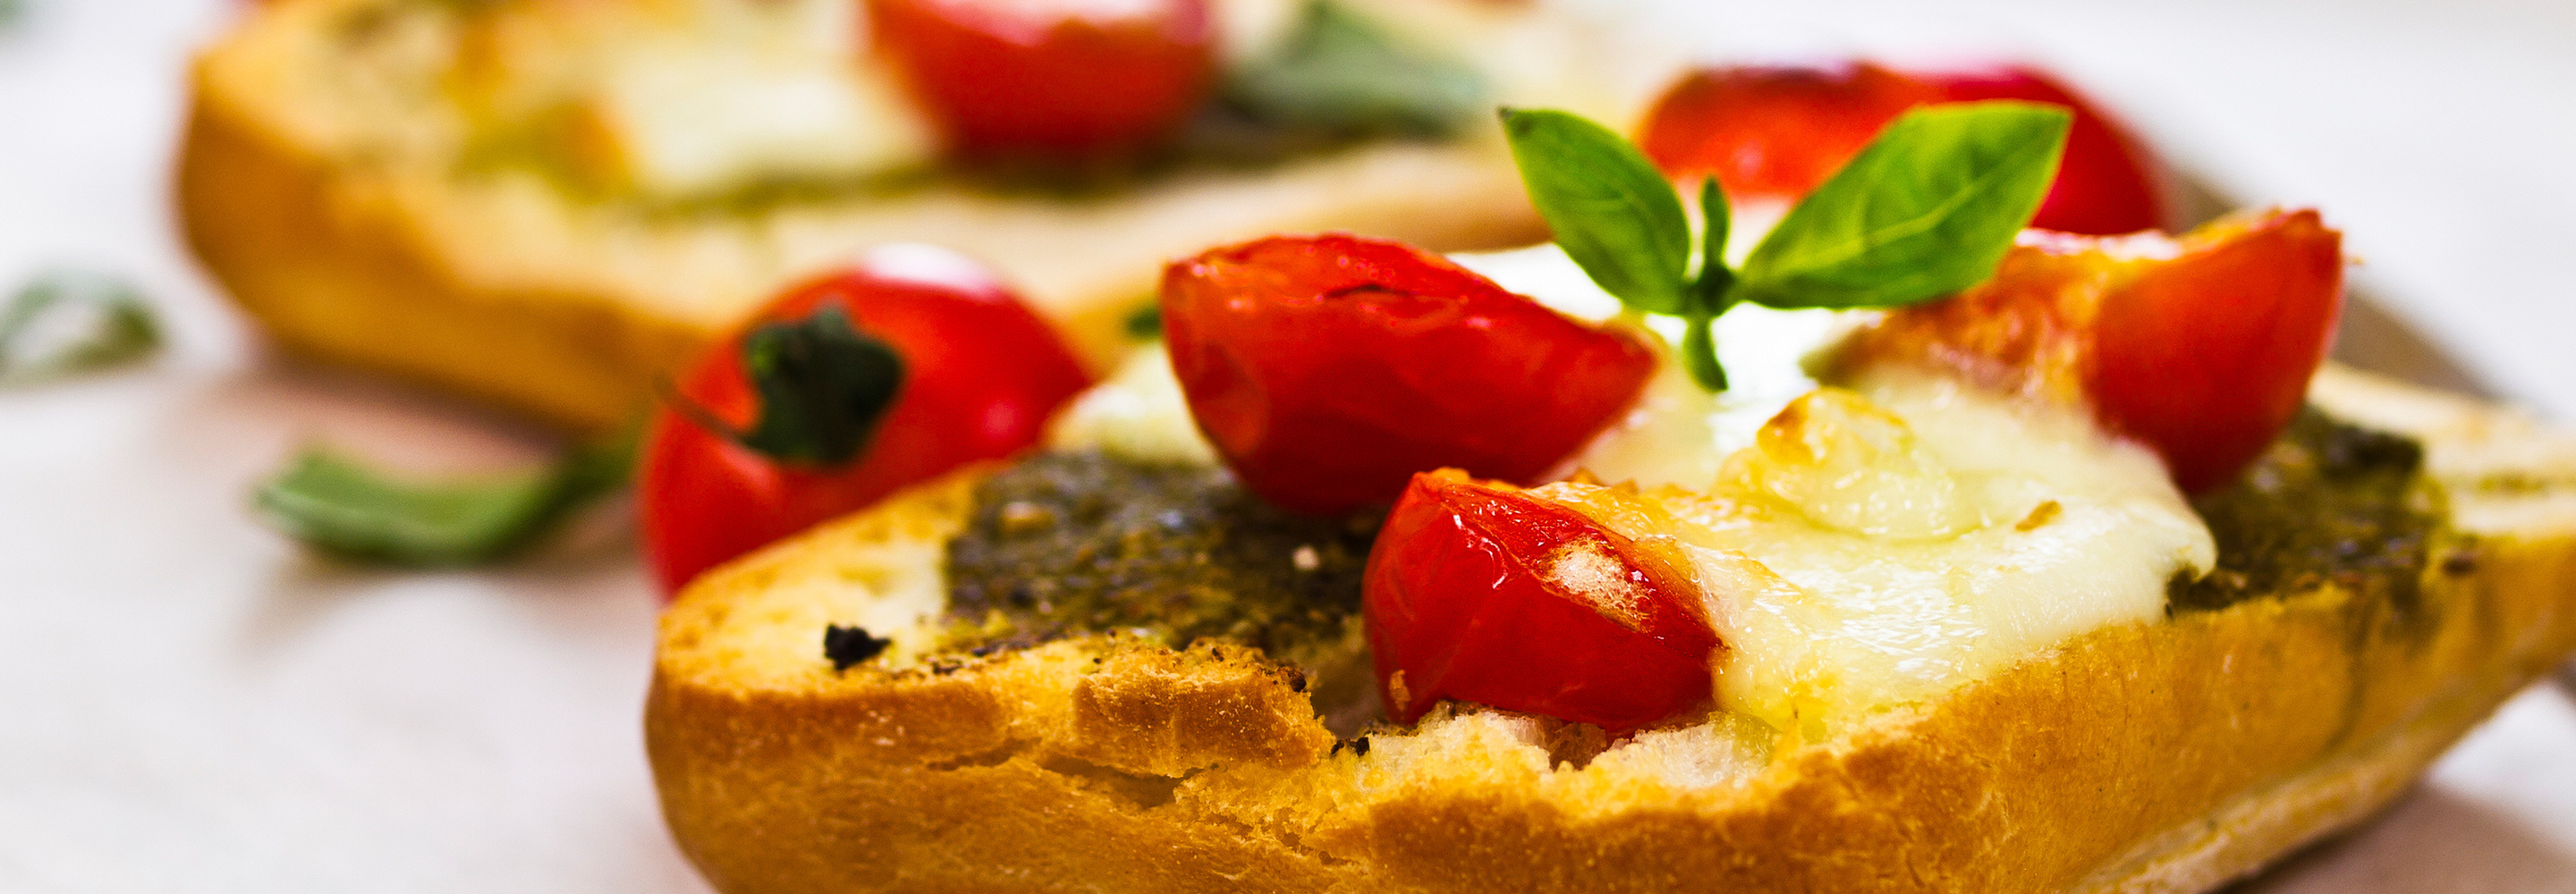 Bruschetta sycylijska - Galbani – od ponad 140 lat dostarczamy najlepsze włoskie smaki na talerze całego świata